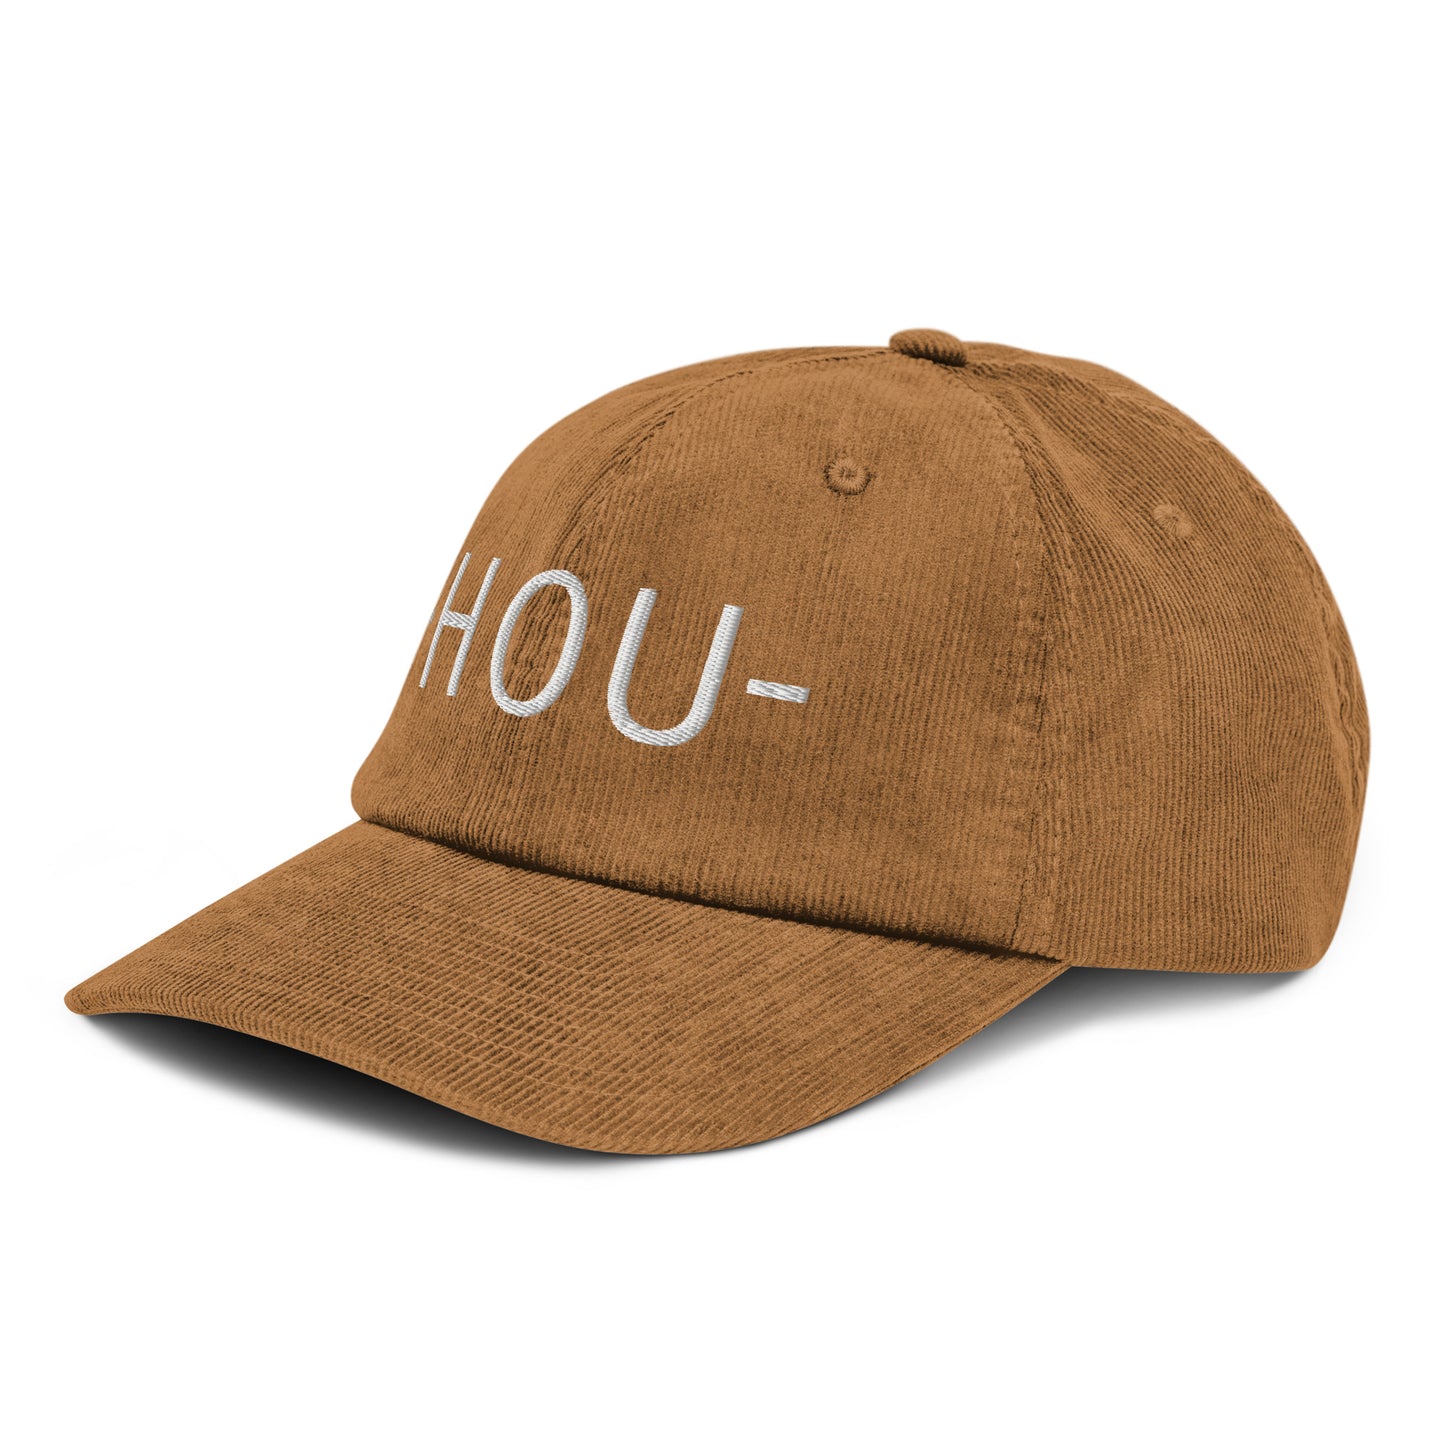 Souvenir Corduroy Hat - White • HOU Houston • YHM Designs - Image 19